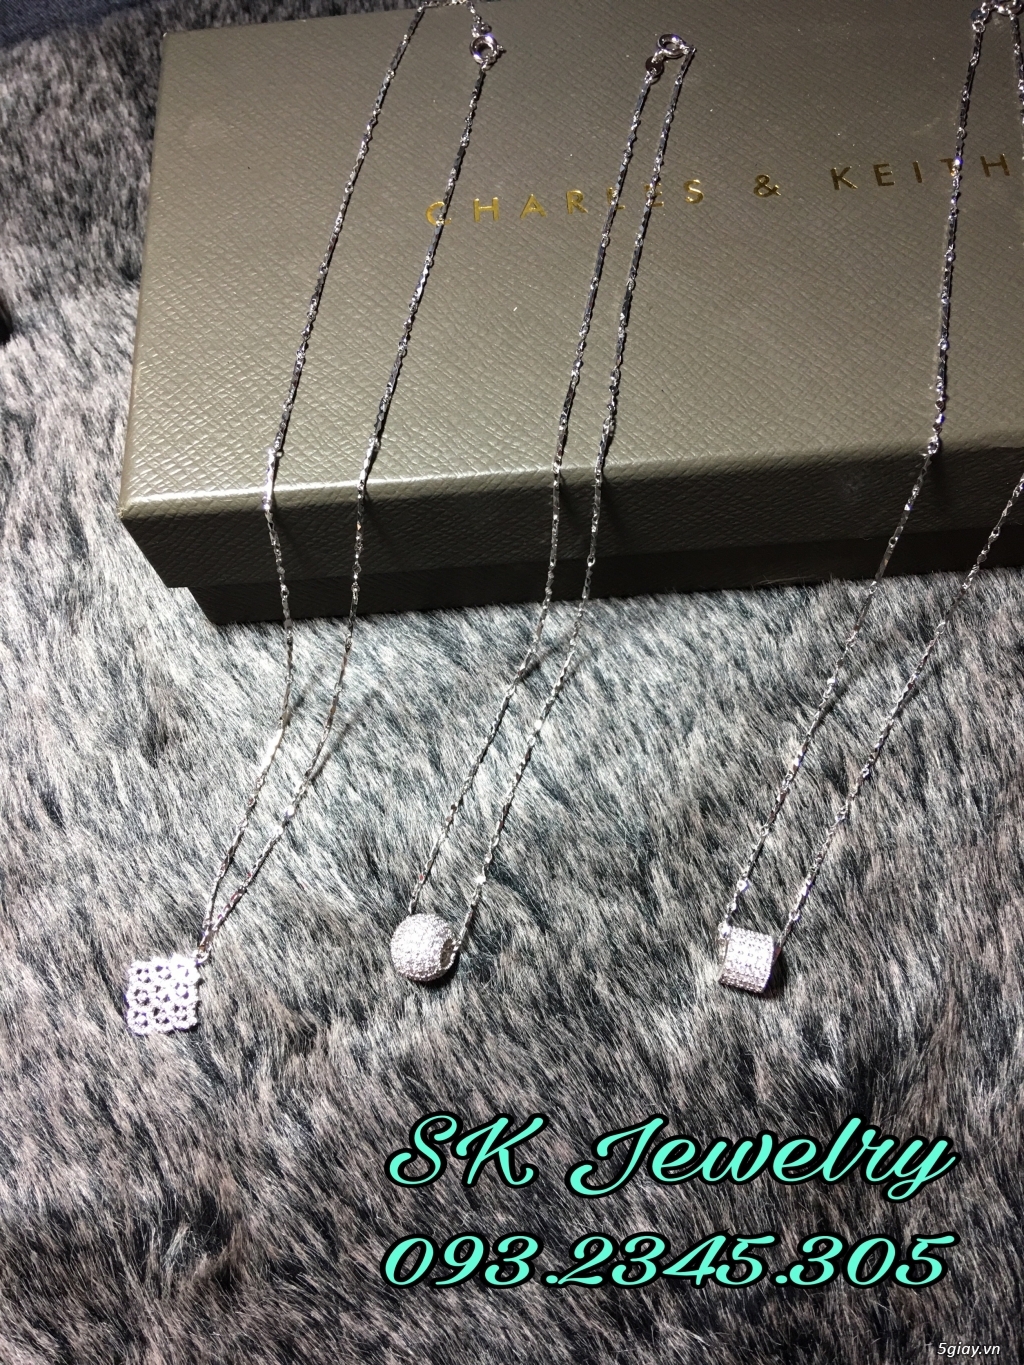 SK Jewelry - Phụ kiện trang sức cao cấp giá rẻ - 27